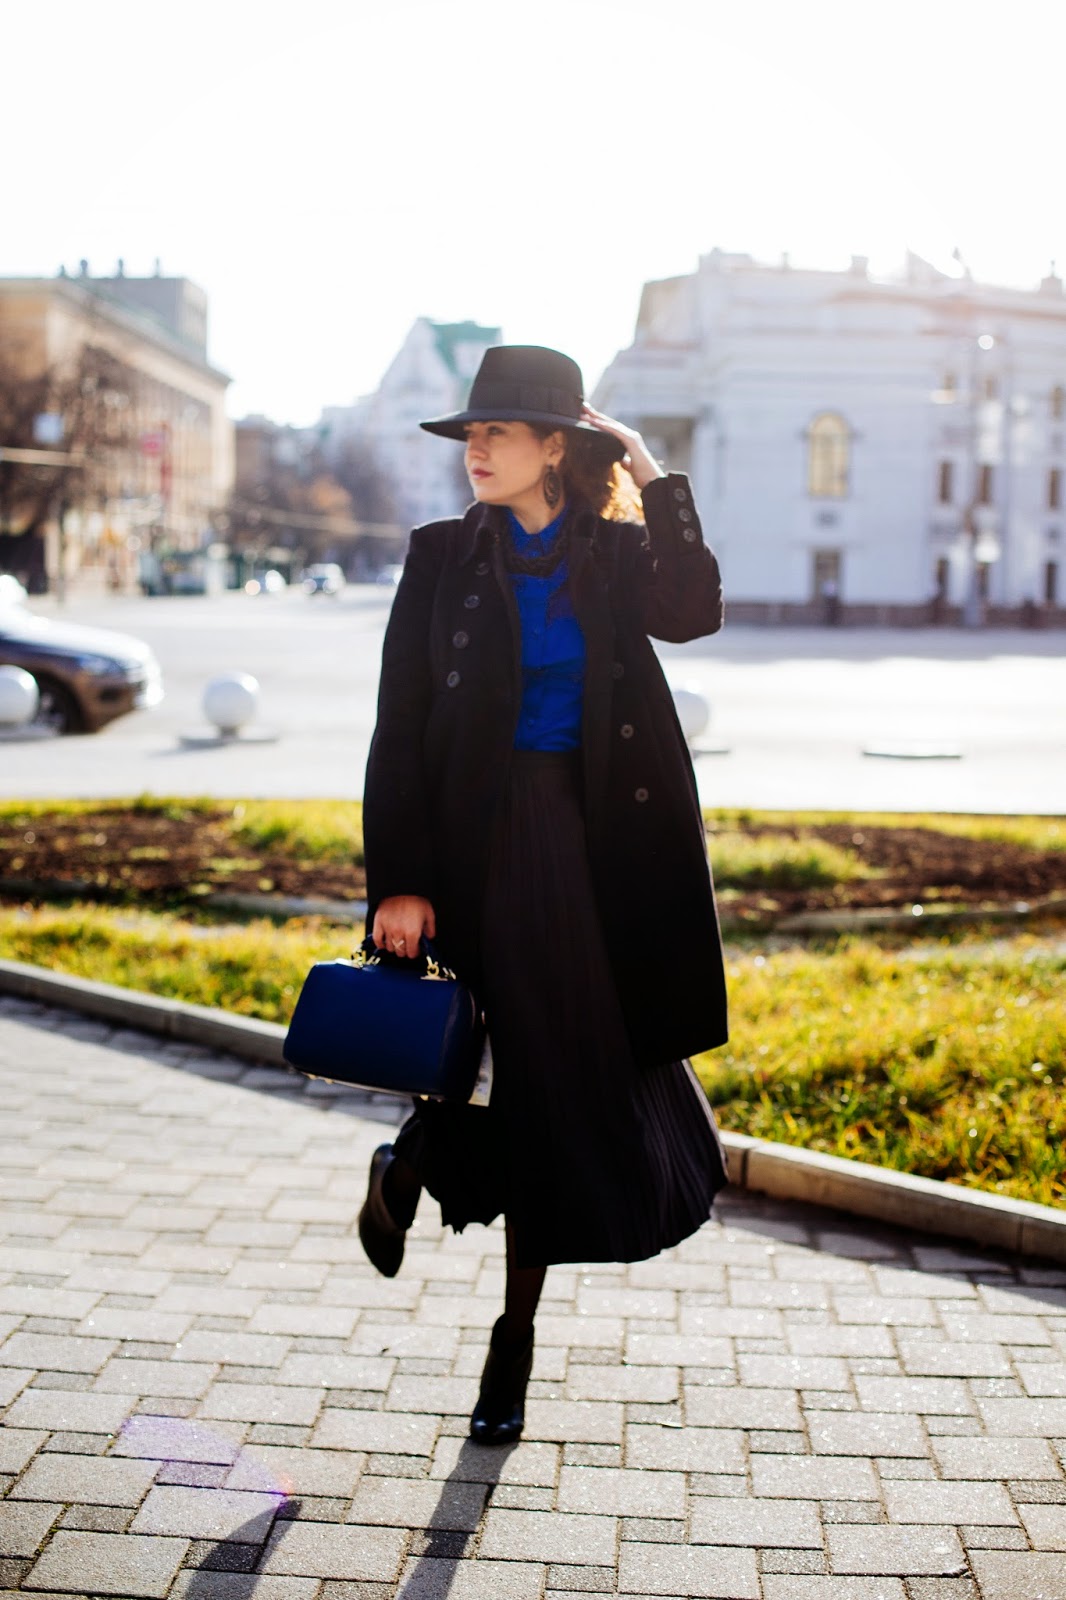 Черное пальто и шляпа. Девушка в пальто и шляпе. Шляпа к пальто длинному. Девушка в длинном пальто и шляпе.